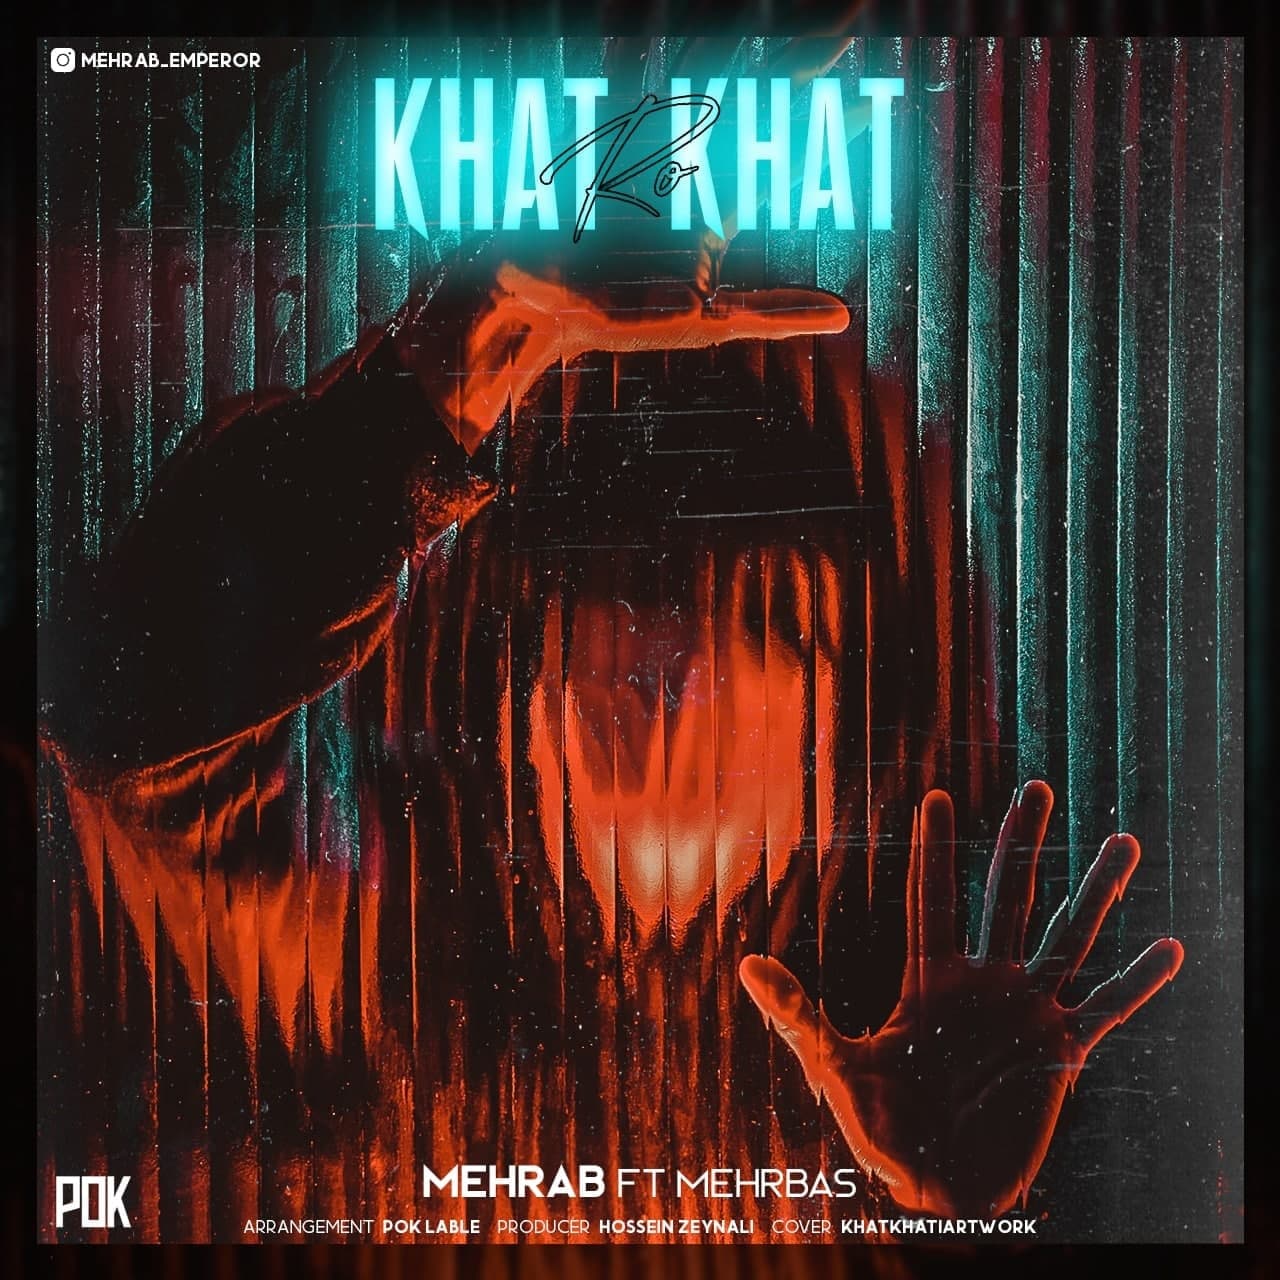  دانلود آهنگ جدید مهراب - خط رو خط | Download New Music By Mehrab - Khat Ro Khat (Feat. Mehrbas)